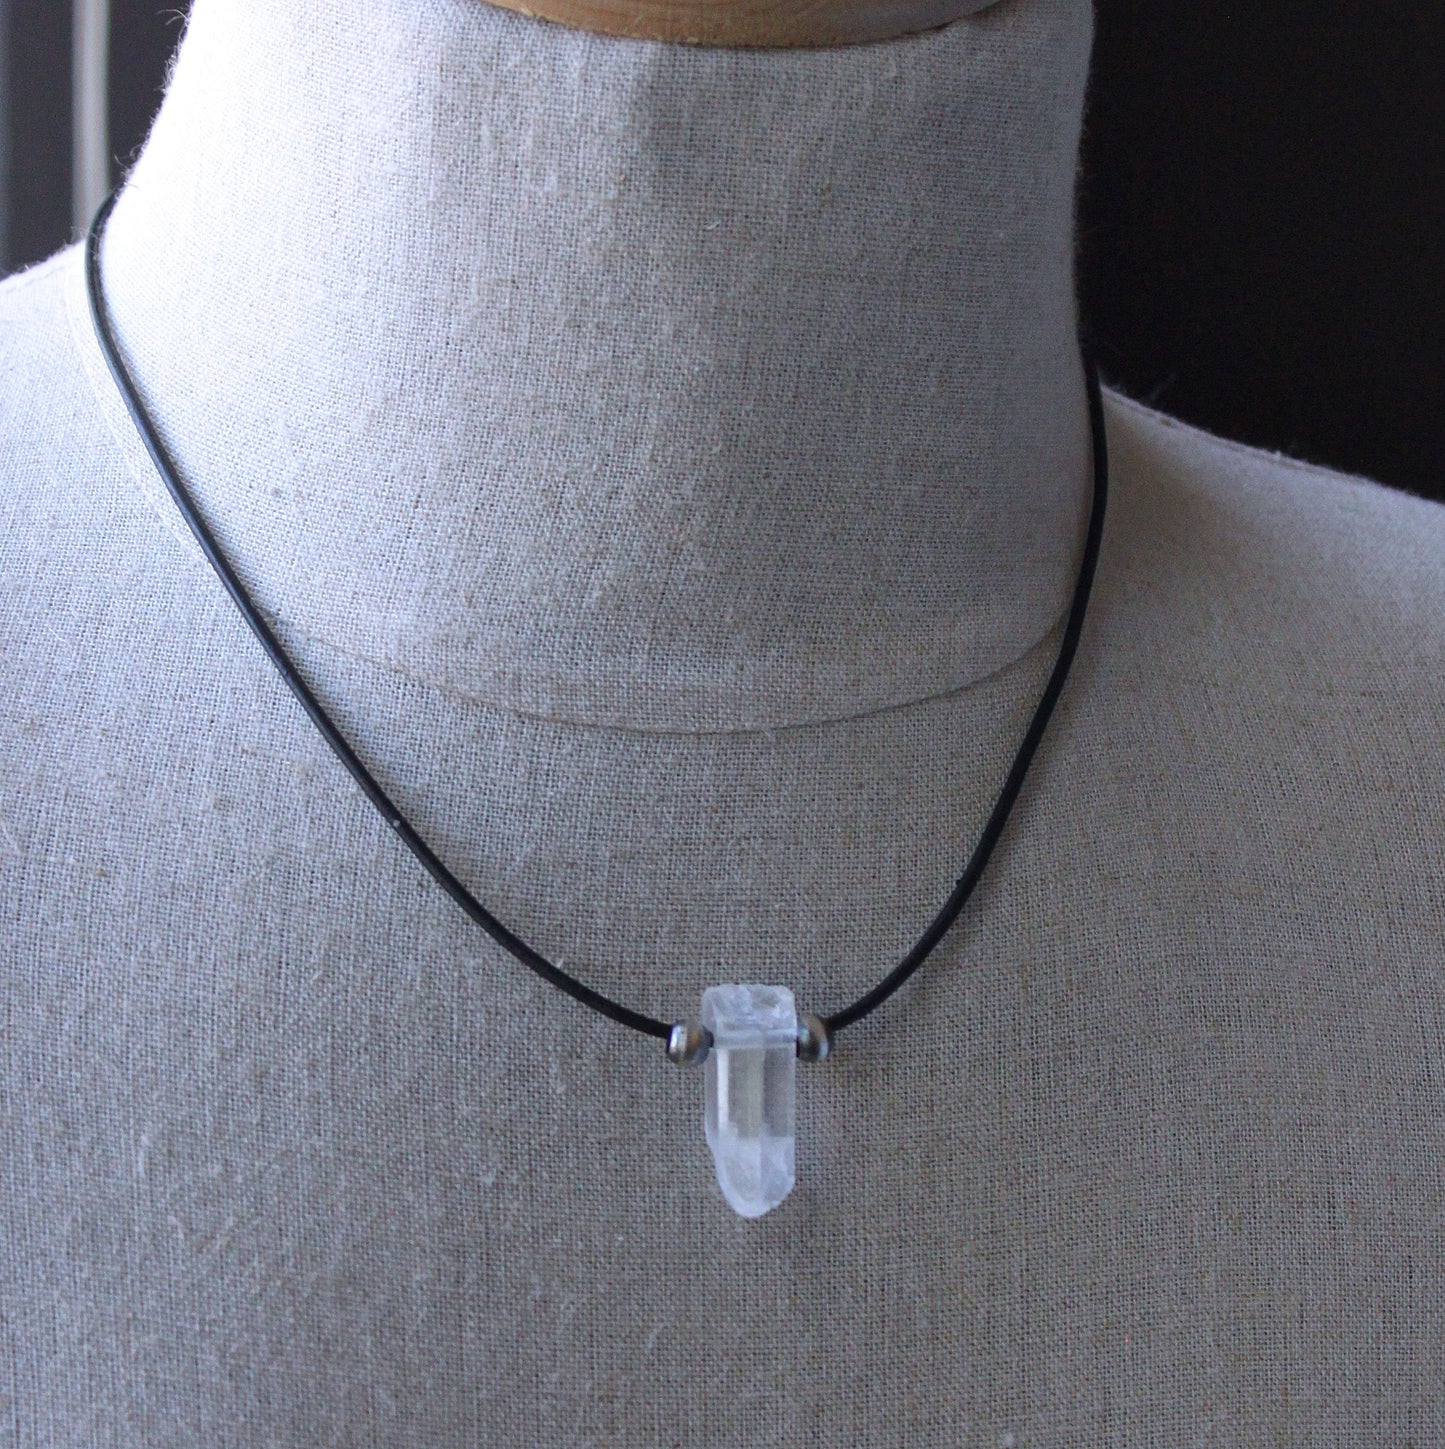 Men's crystal quartz necklace